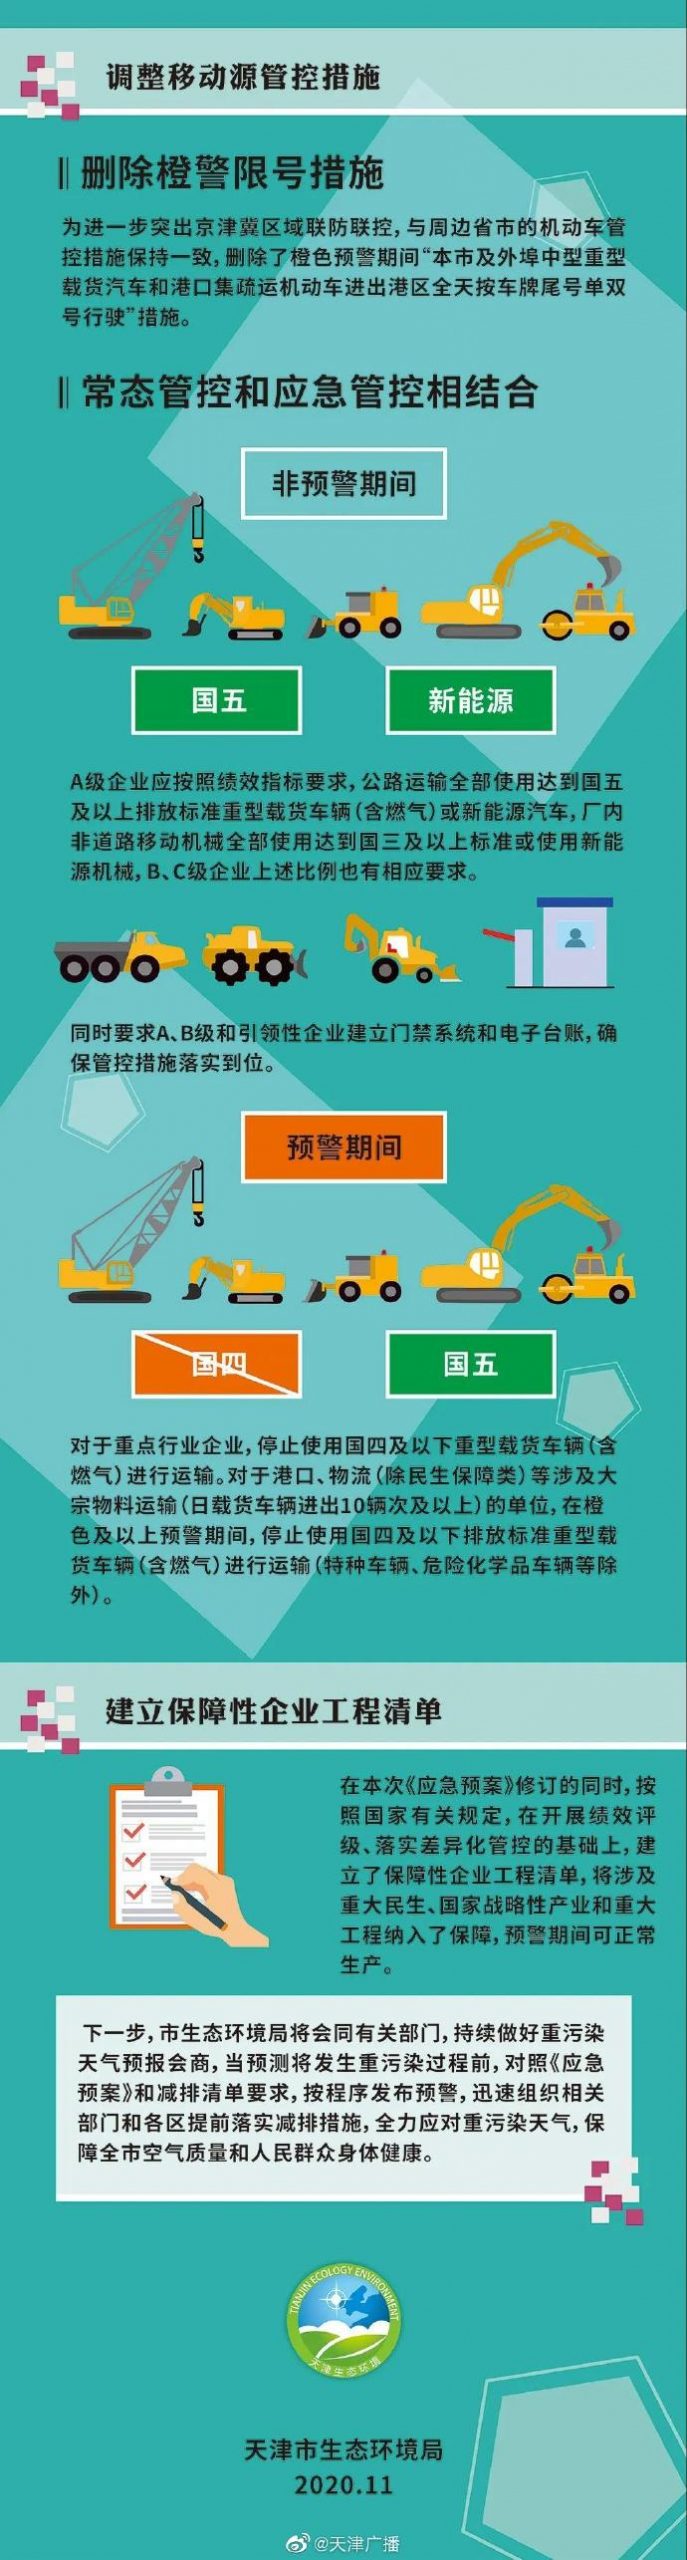 天津删除重污染天气橙色预警限号措施